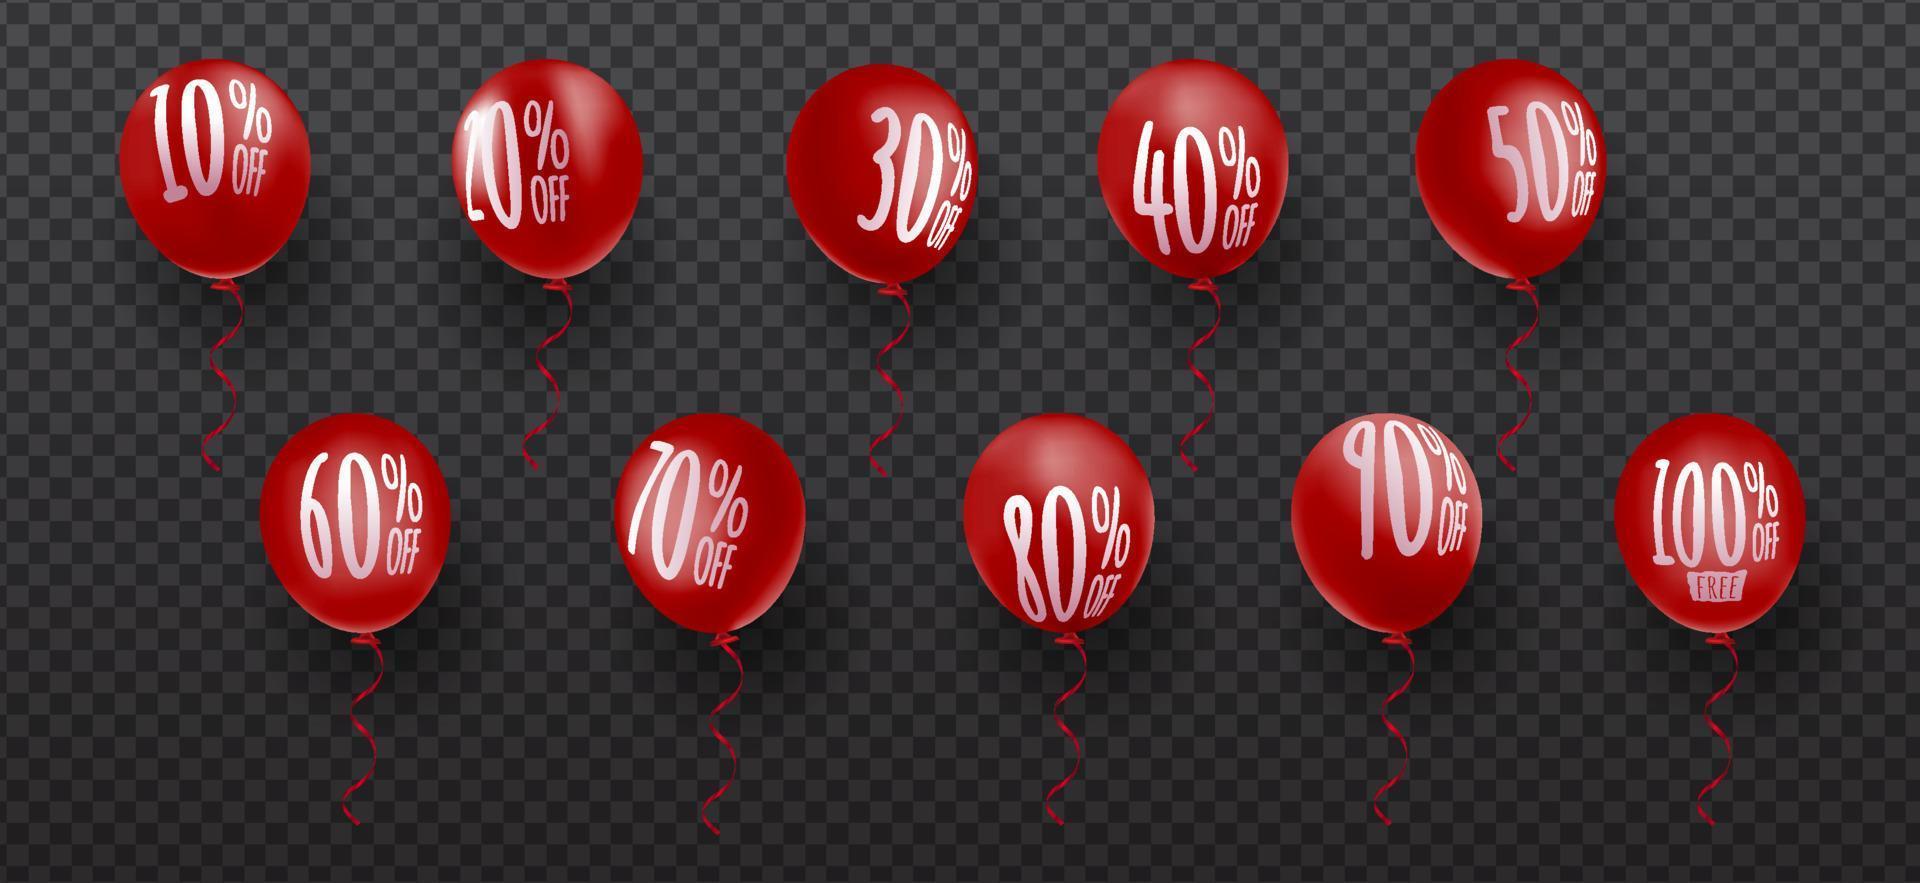 set korting procent hekje op een 3D-realistische rode ballon, verkoop promo prijs gesneden label geïsoleerde eps10 vector sjabloon